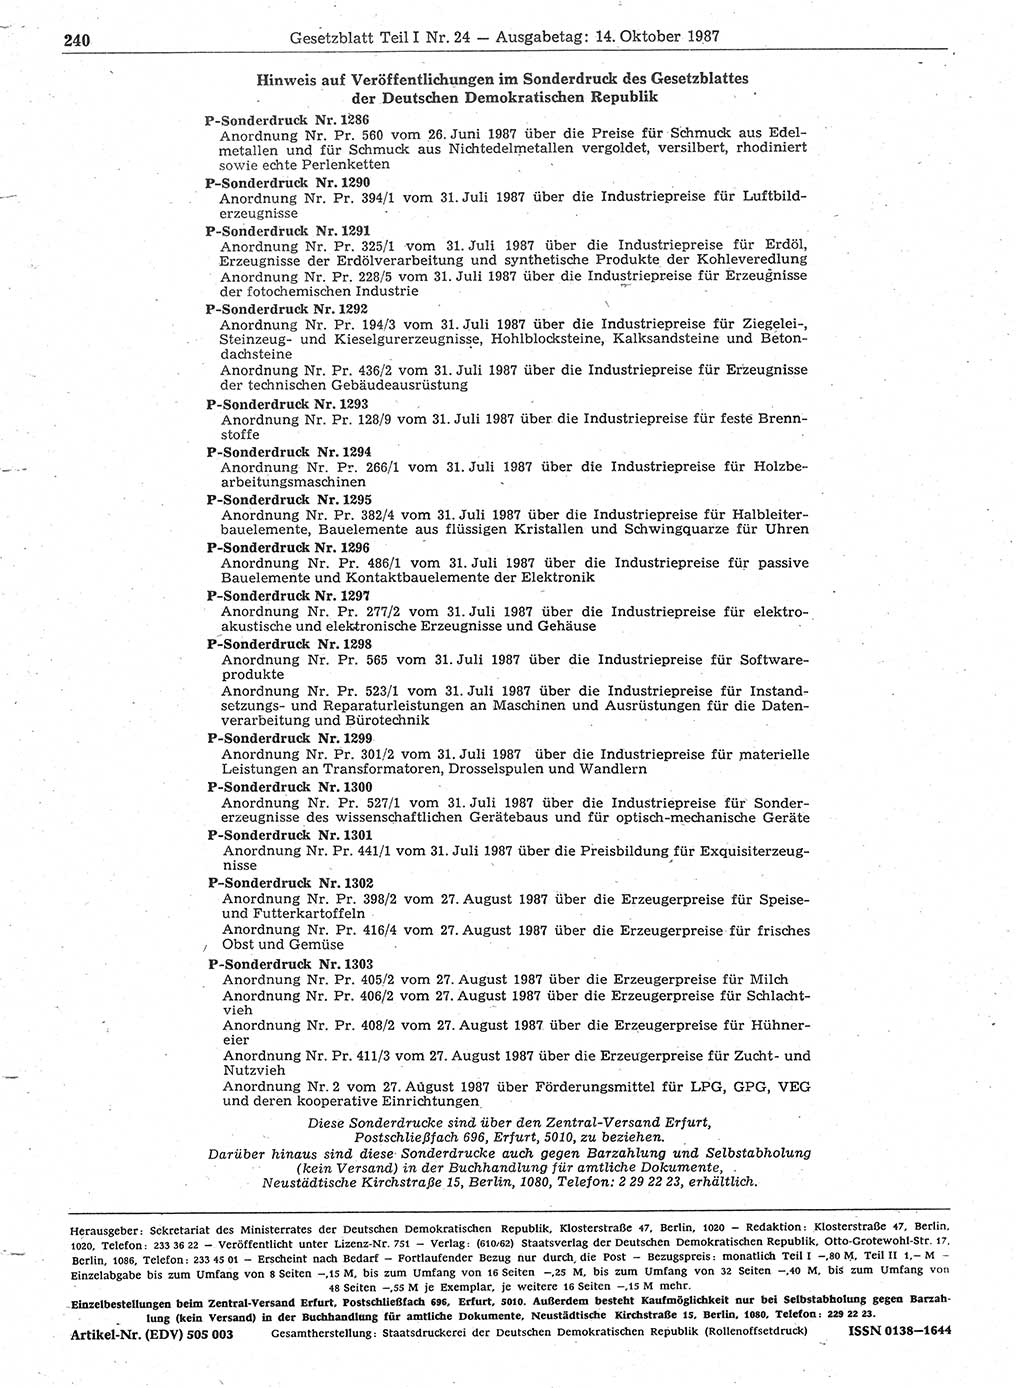 Gesetzblatt (GBl.) der Deutschen Demokratischen Republik (DDR) Teil Ⅰ 1987, Seite 240 (GBl. DDR Ⅰ 1987, S. 240)